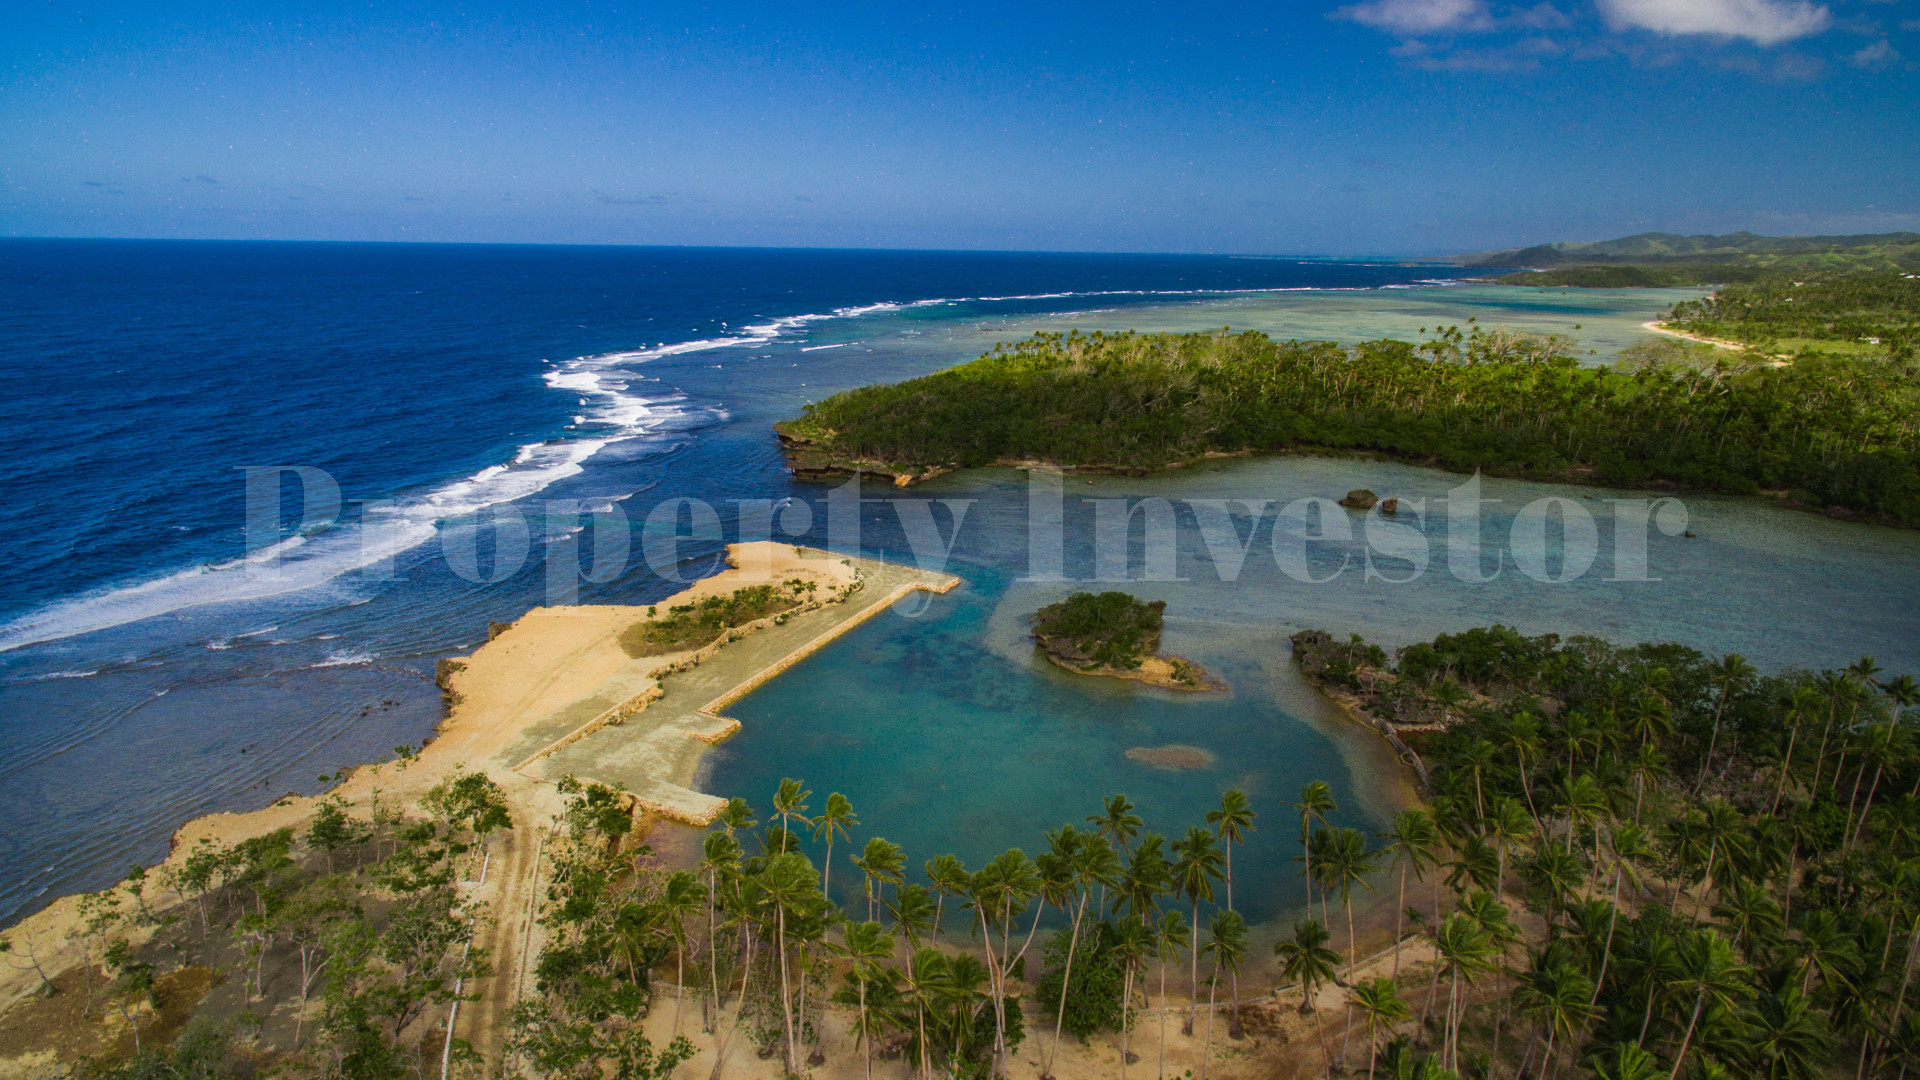 Земля в собственность на острове Фиджи (участок 12)